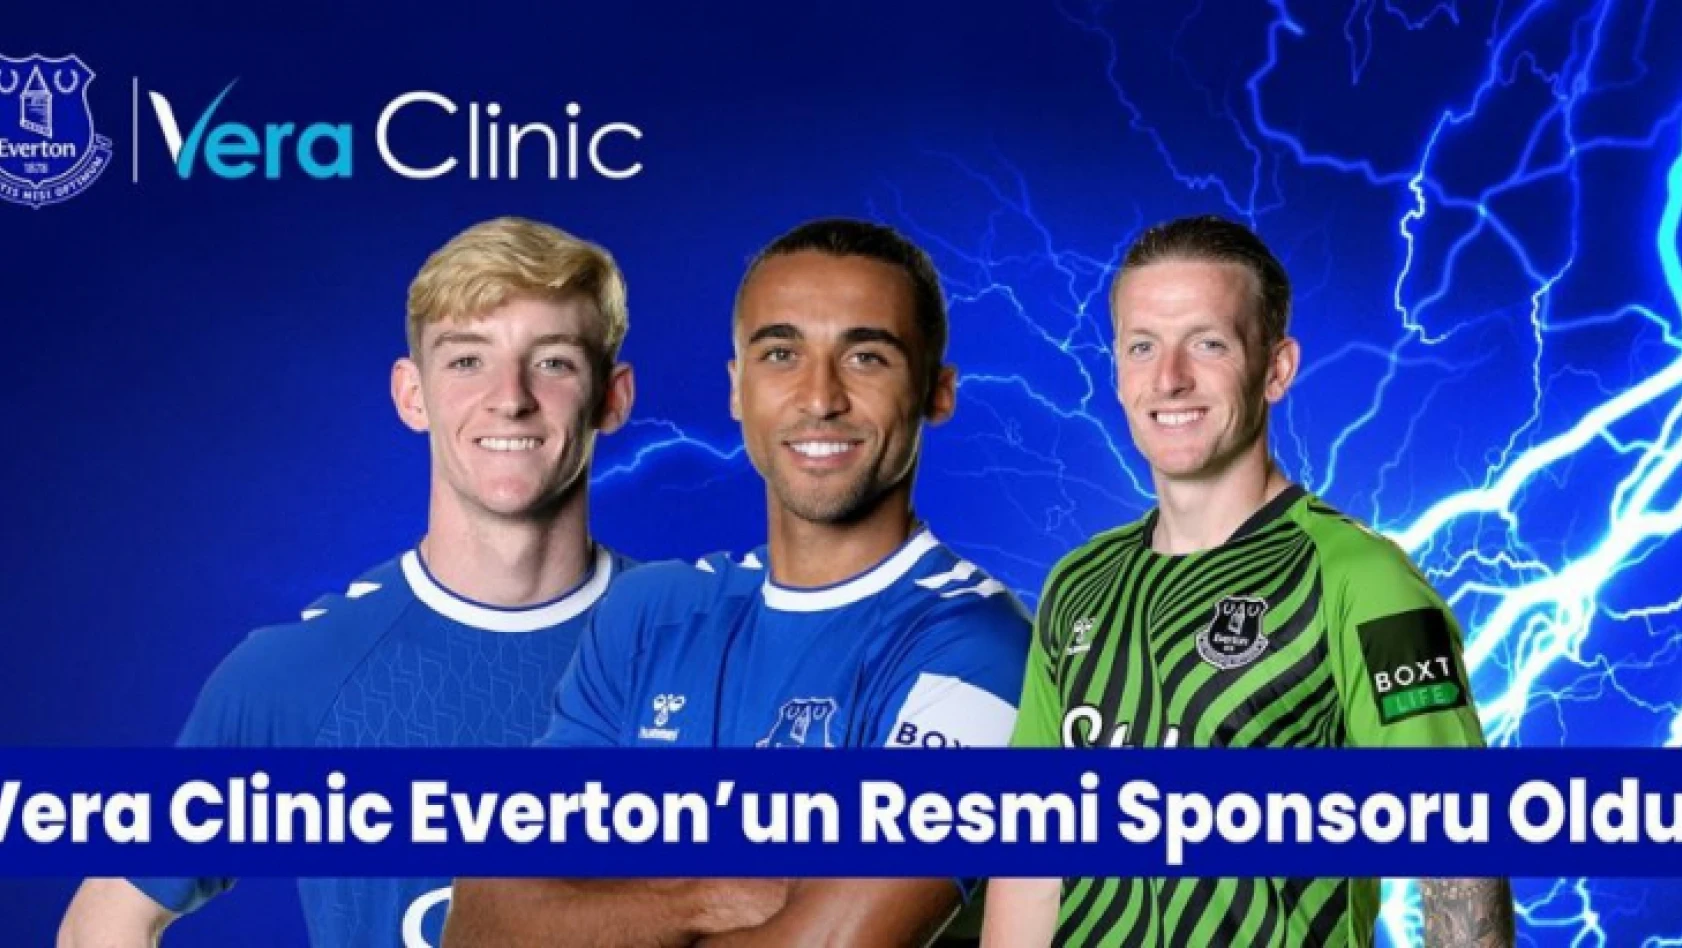 İngiliz takımı Everton'ın Vera Clinic resmi sponsoru oldu